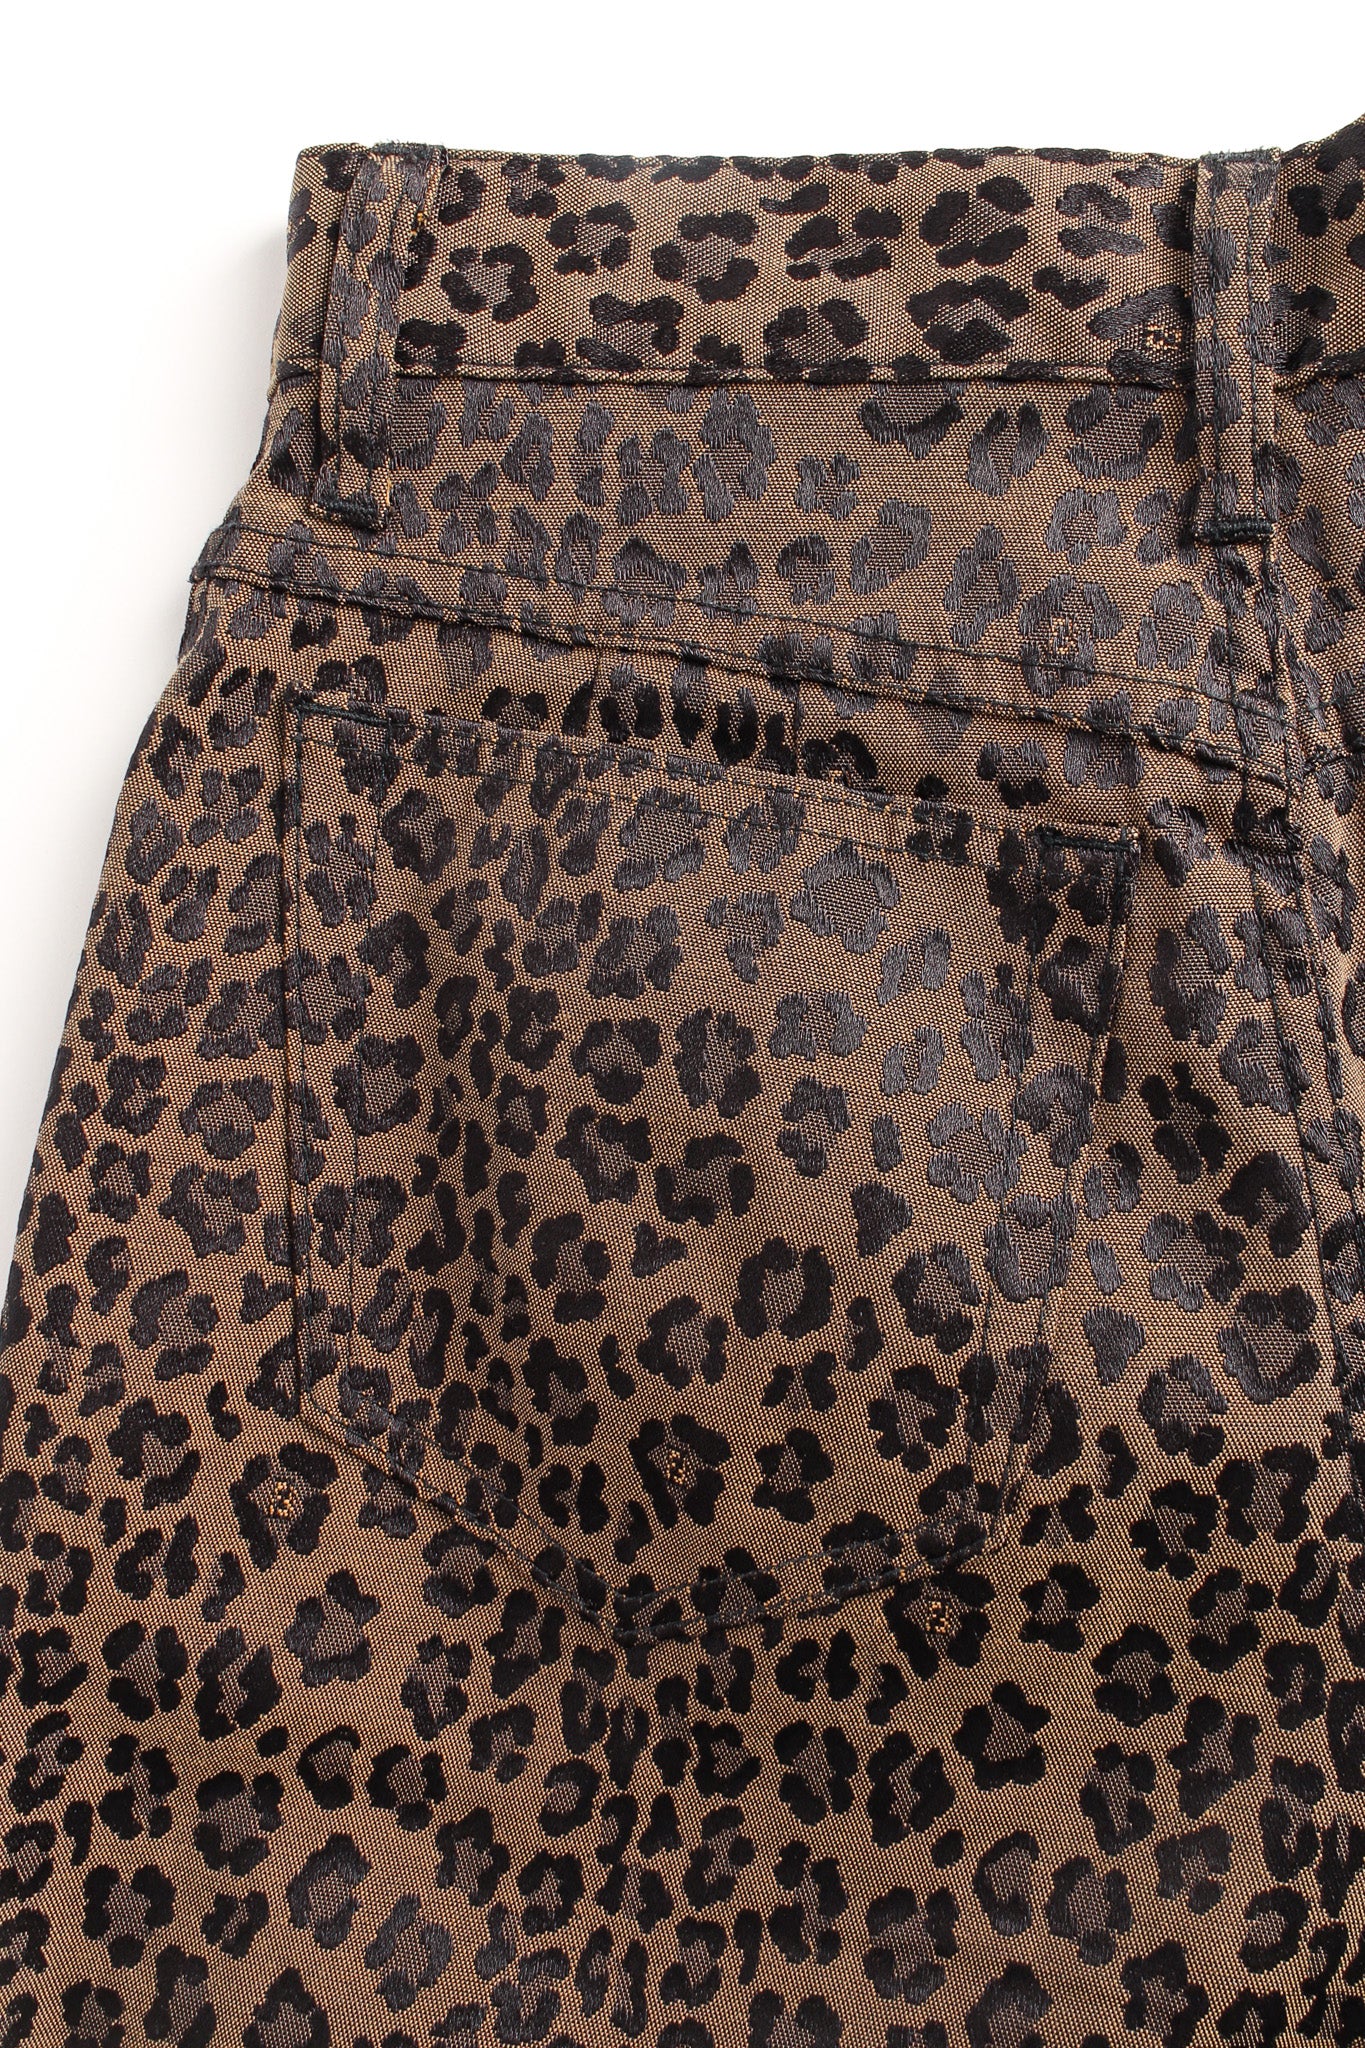 Vintage Fendi Leopard Signed Logo Print Jeans back pocket @ Recess LA